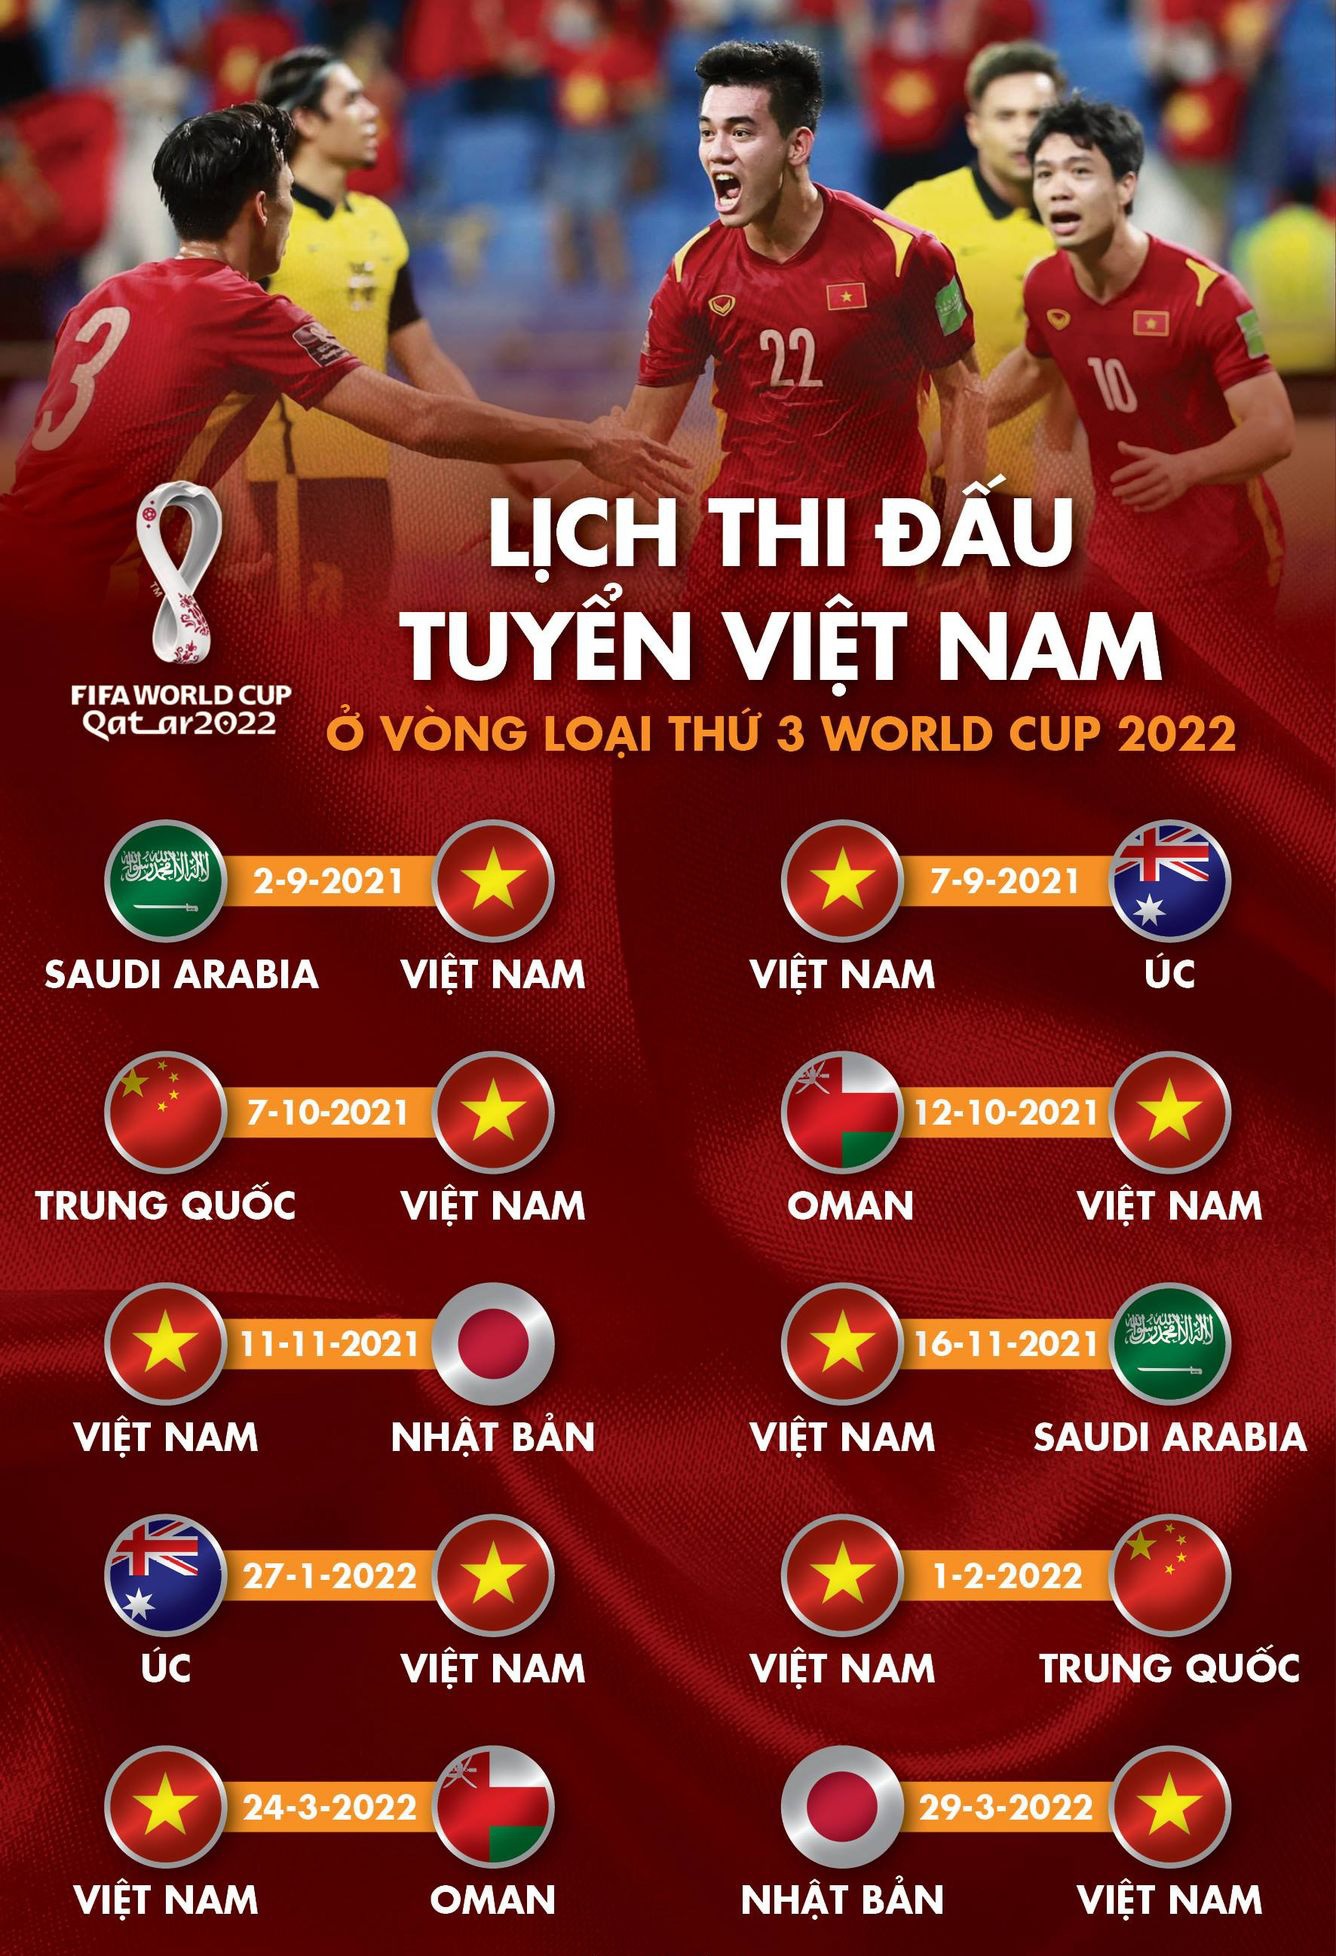 Đối thủ trực tiếp của ĐT Việt Nam tạo địa chấn ở châu Âu, HLV Park thấp thỏm trước VL World Cup 2022